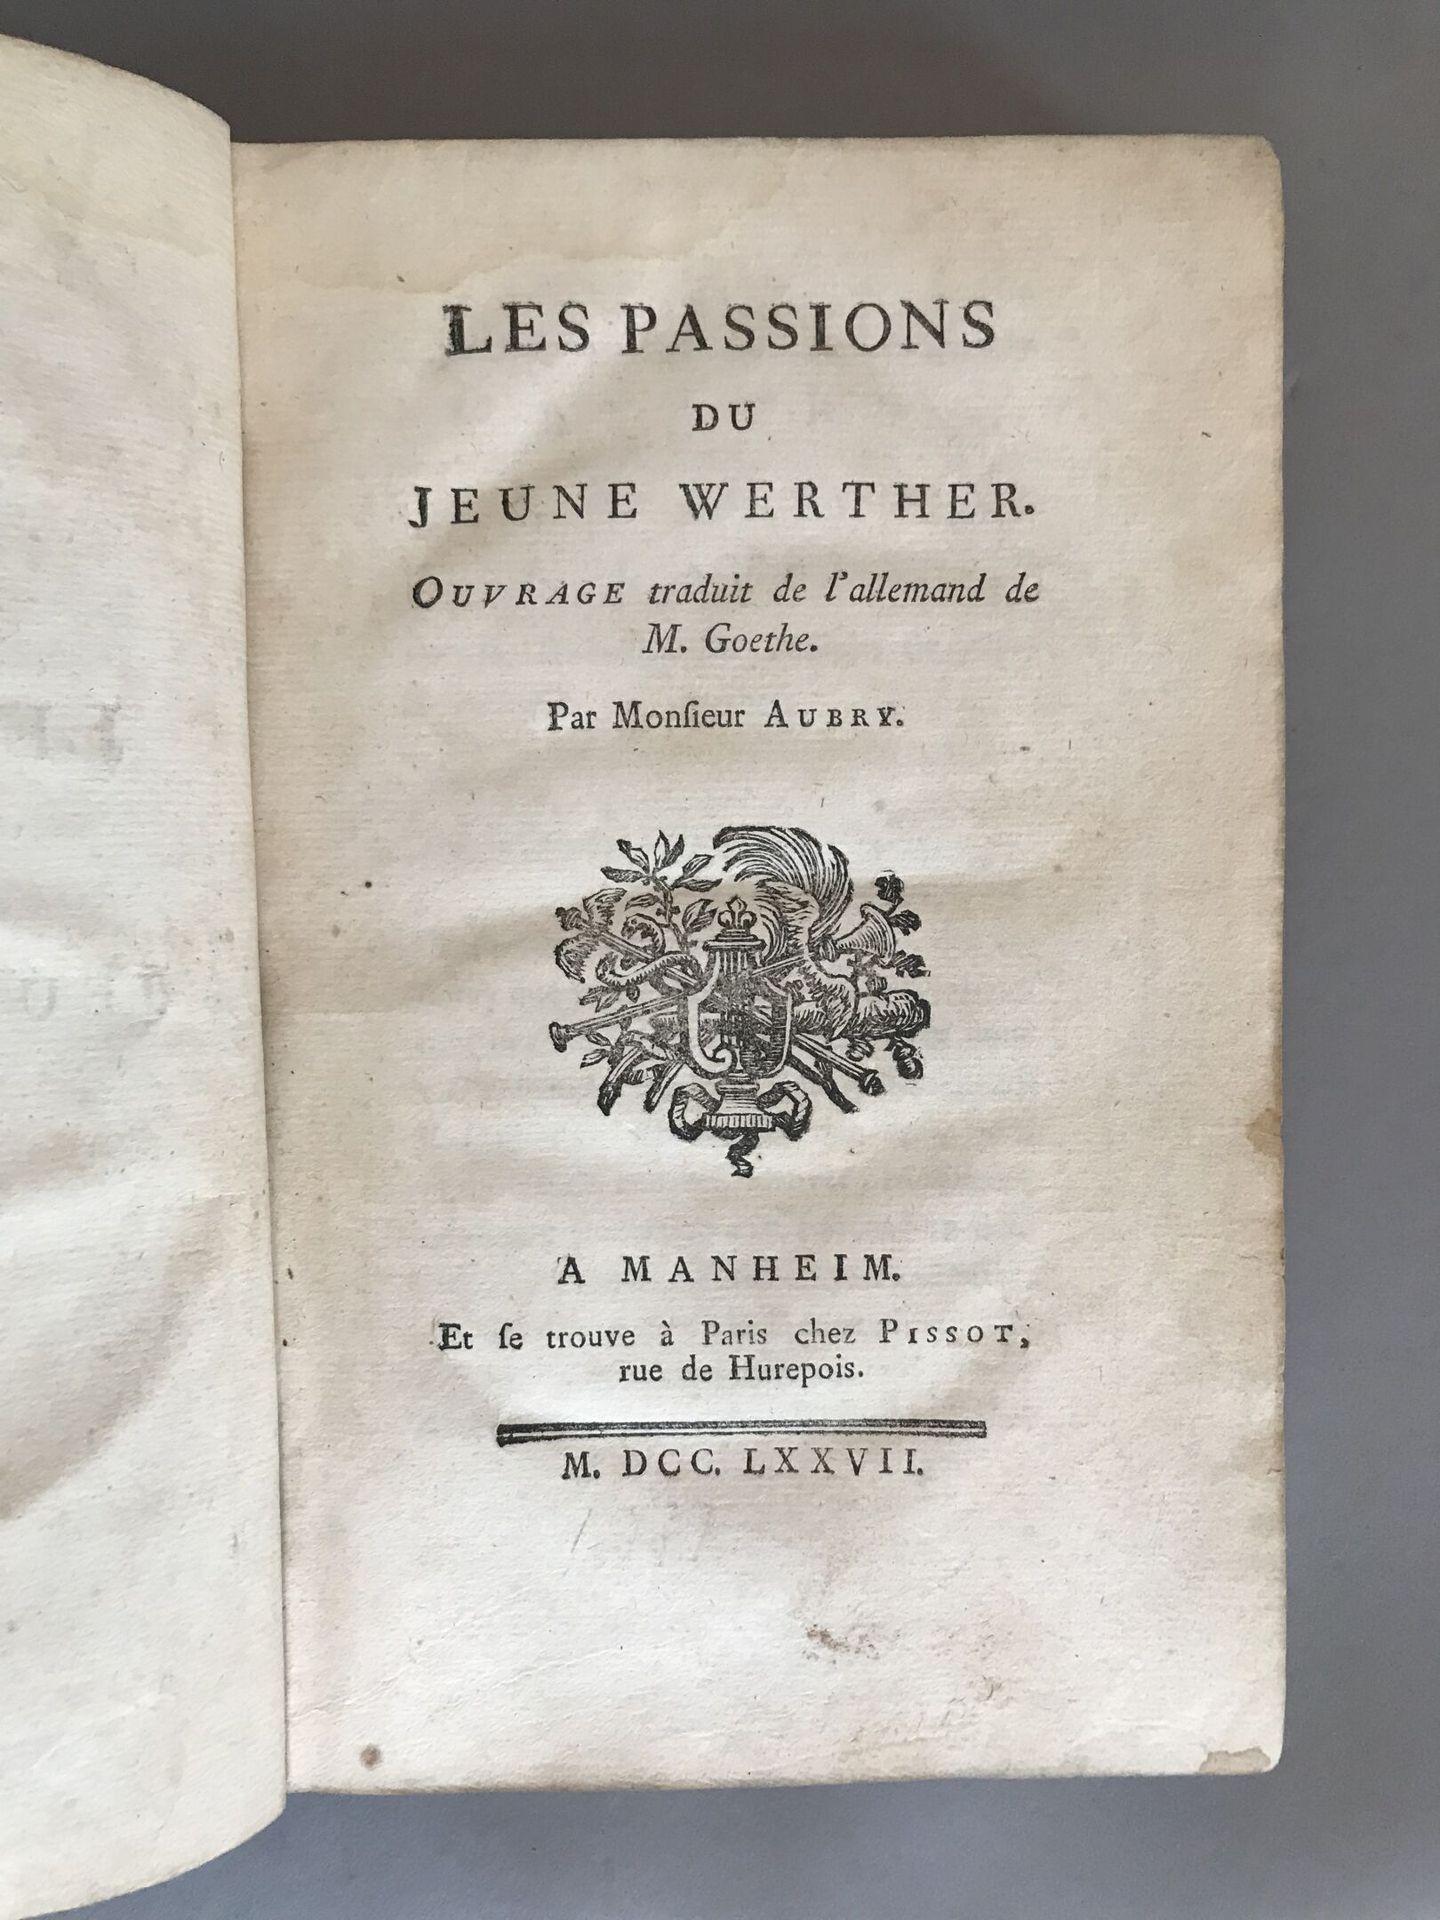 Null 戈特，《少年维特的激情》，巴黎，皮索，1777。1卷8开本。

书脊磨损。按原样。



出处。

福西隆-巴尔特鲁赛蒂斯图书馆